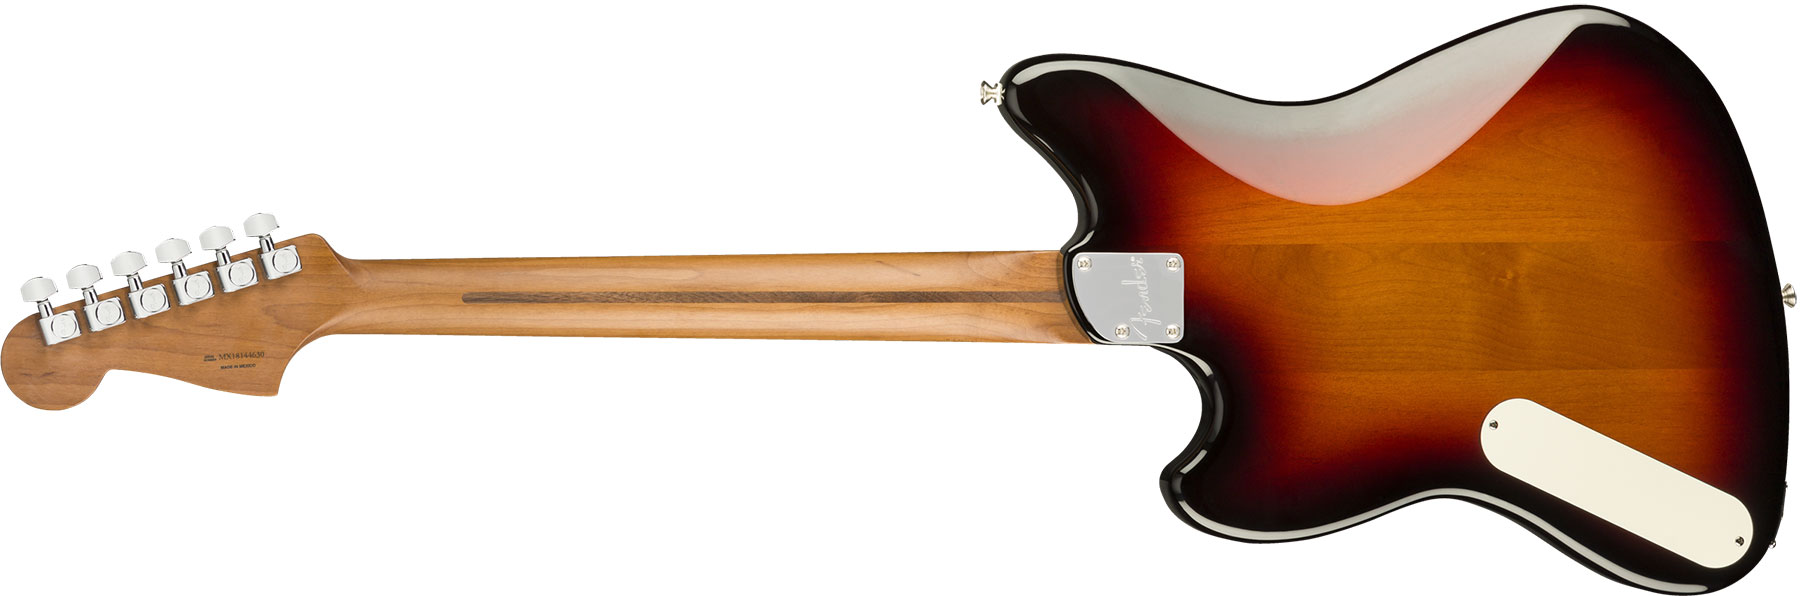 Fender Powercaster Alternate Reality Ltd Hp90 Ht Pf - 3-color Sunburst - Retro-Rock-E-Gitarre - Variation 1